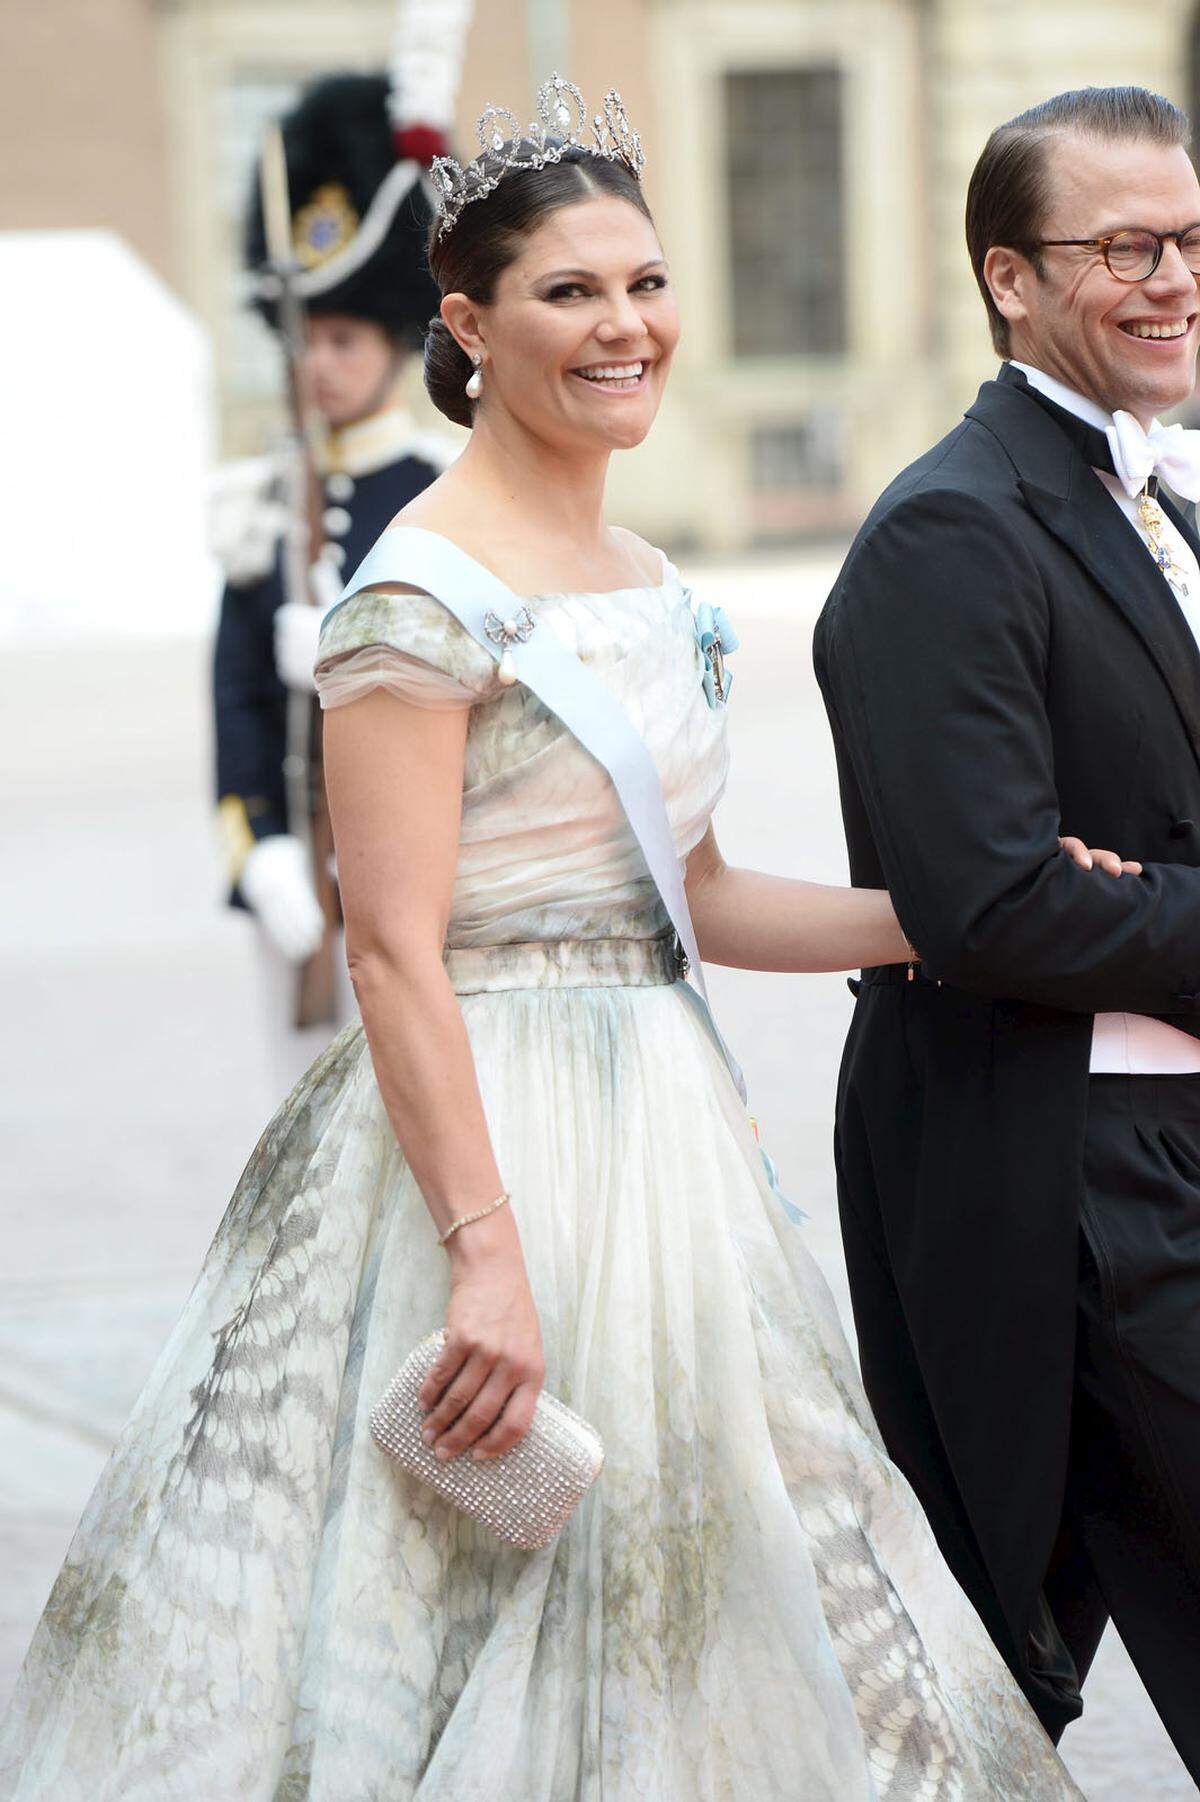 Prinzessin Victoria von Schweden überraschte bei der Hochzeit ihres Bruders Carl Philip in einem Kleid aus der Conscious-Kollektion der schwedischen Textilkette H&amp;M.